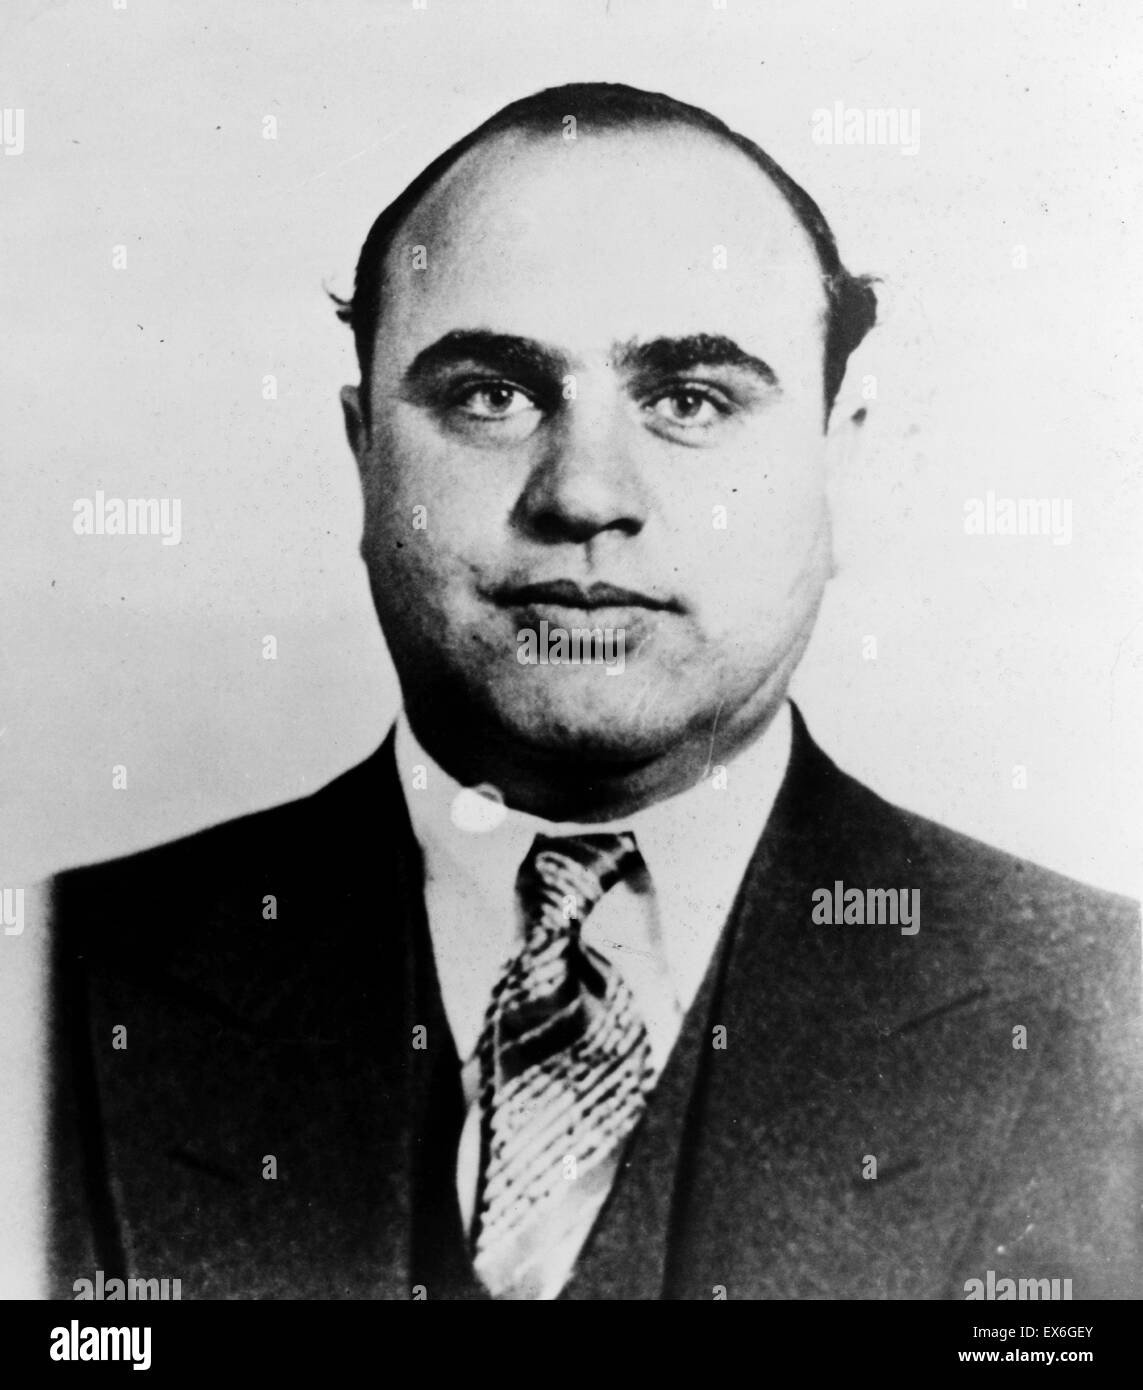 Fotografia di Alphonse Gabriel 'Al' Capone (1899-1947). Infamous gangster americano che ha raggiunto la fama durante il divieto era in America. Datata 1945 Foto Stock